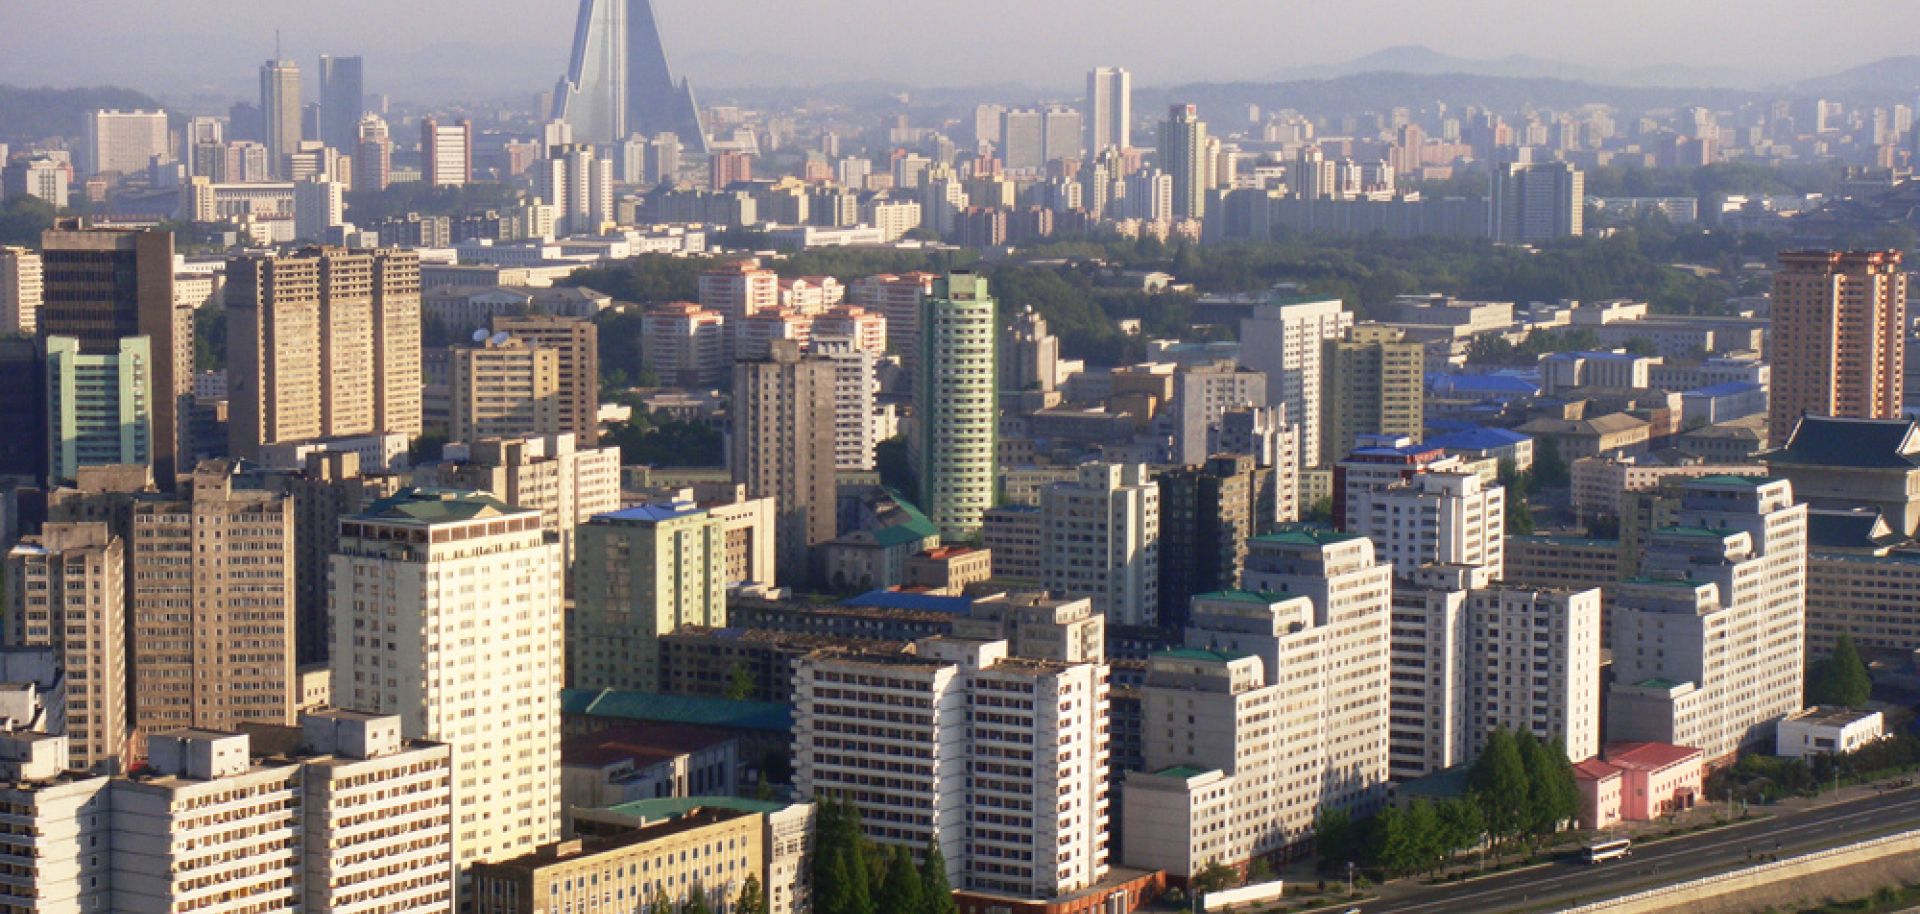 Reflections on Pyongyang